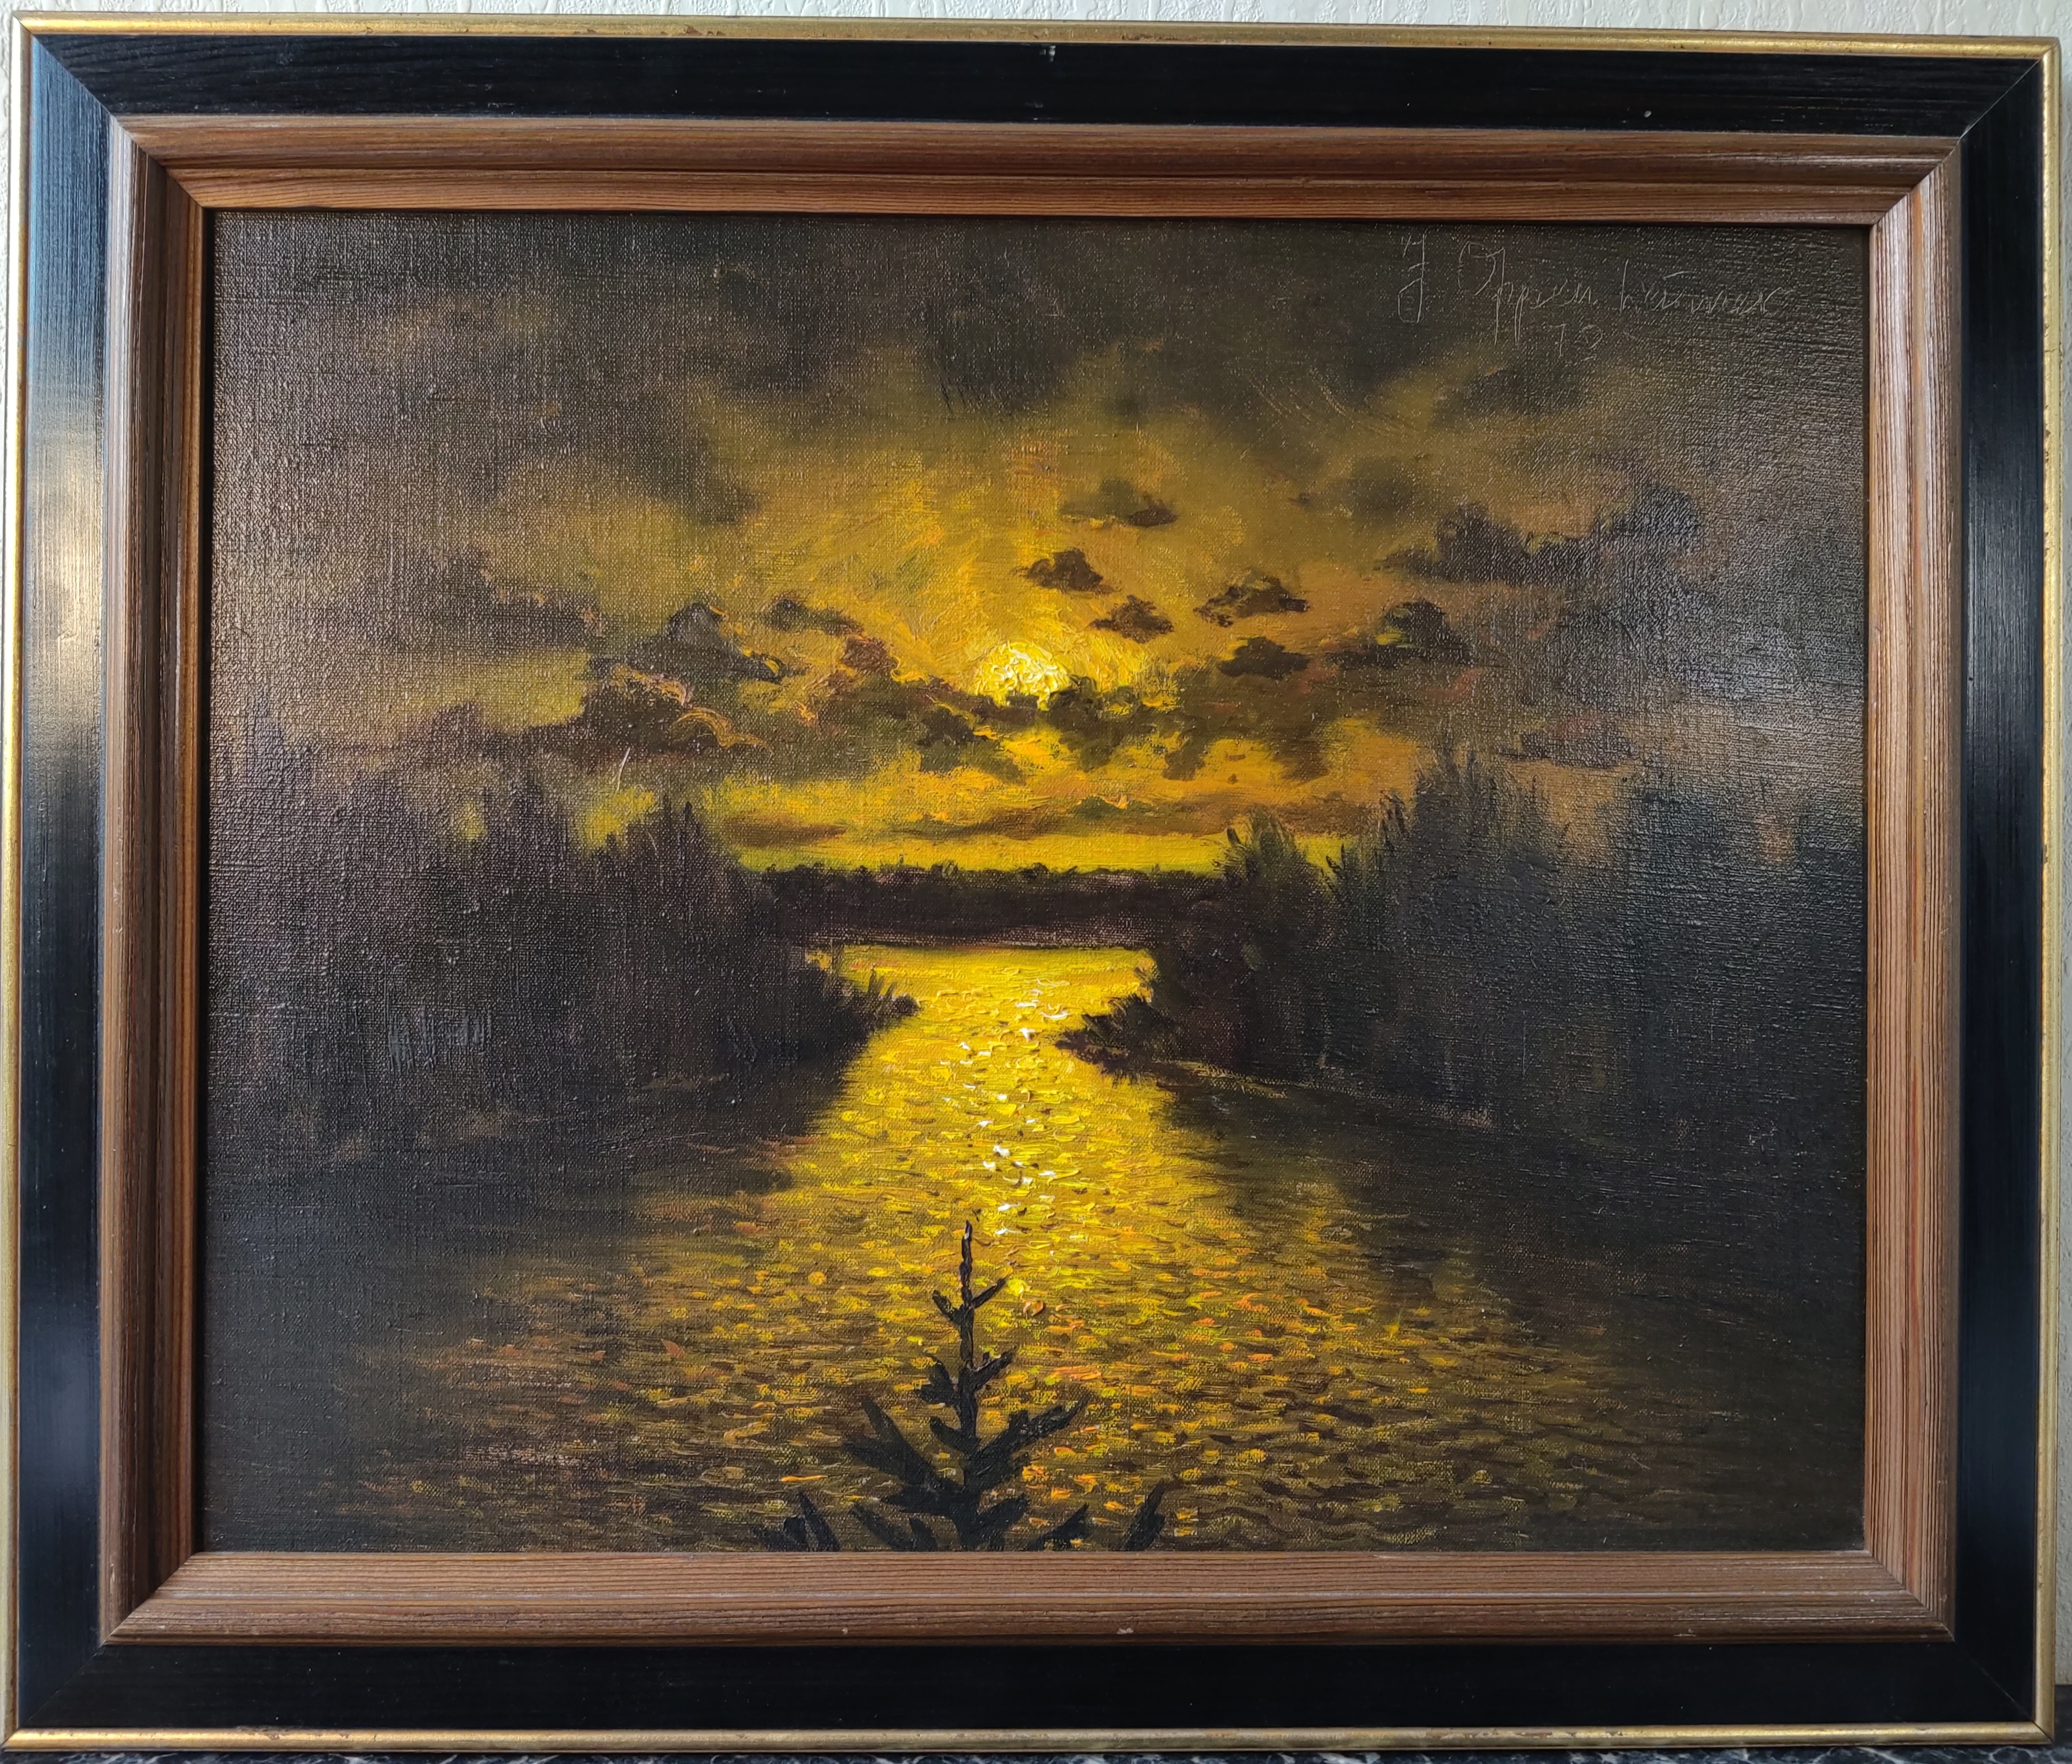 Jonny Oppenheimer - pěkný obraz olej na plátně, západ slunce v krajině 1978